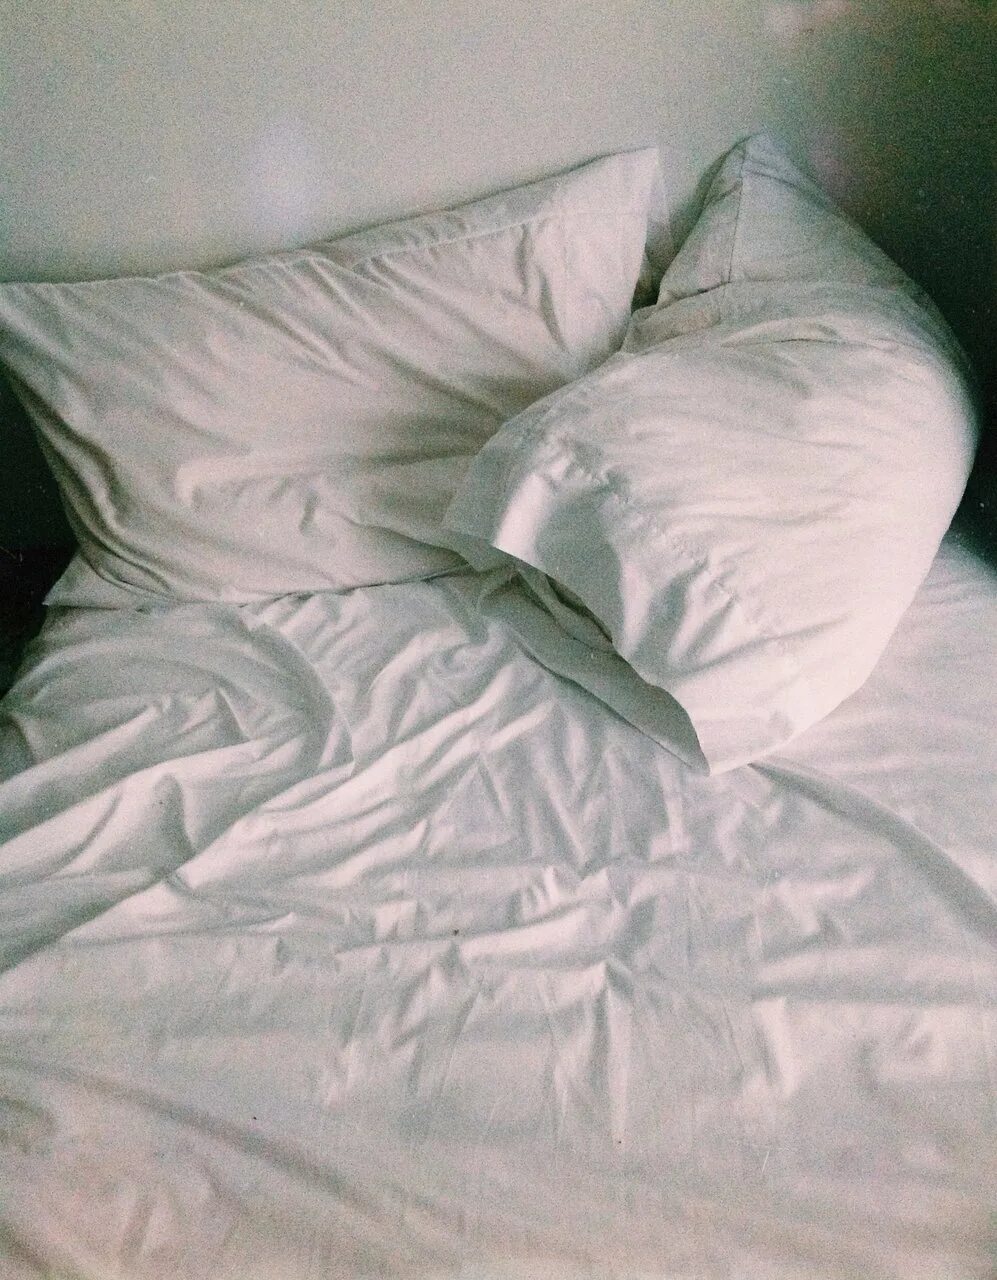 Постель ровно. Кровать сверху. Кровать сверху без одеяла. Кровать вид сверху. Смятая постель.